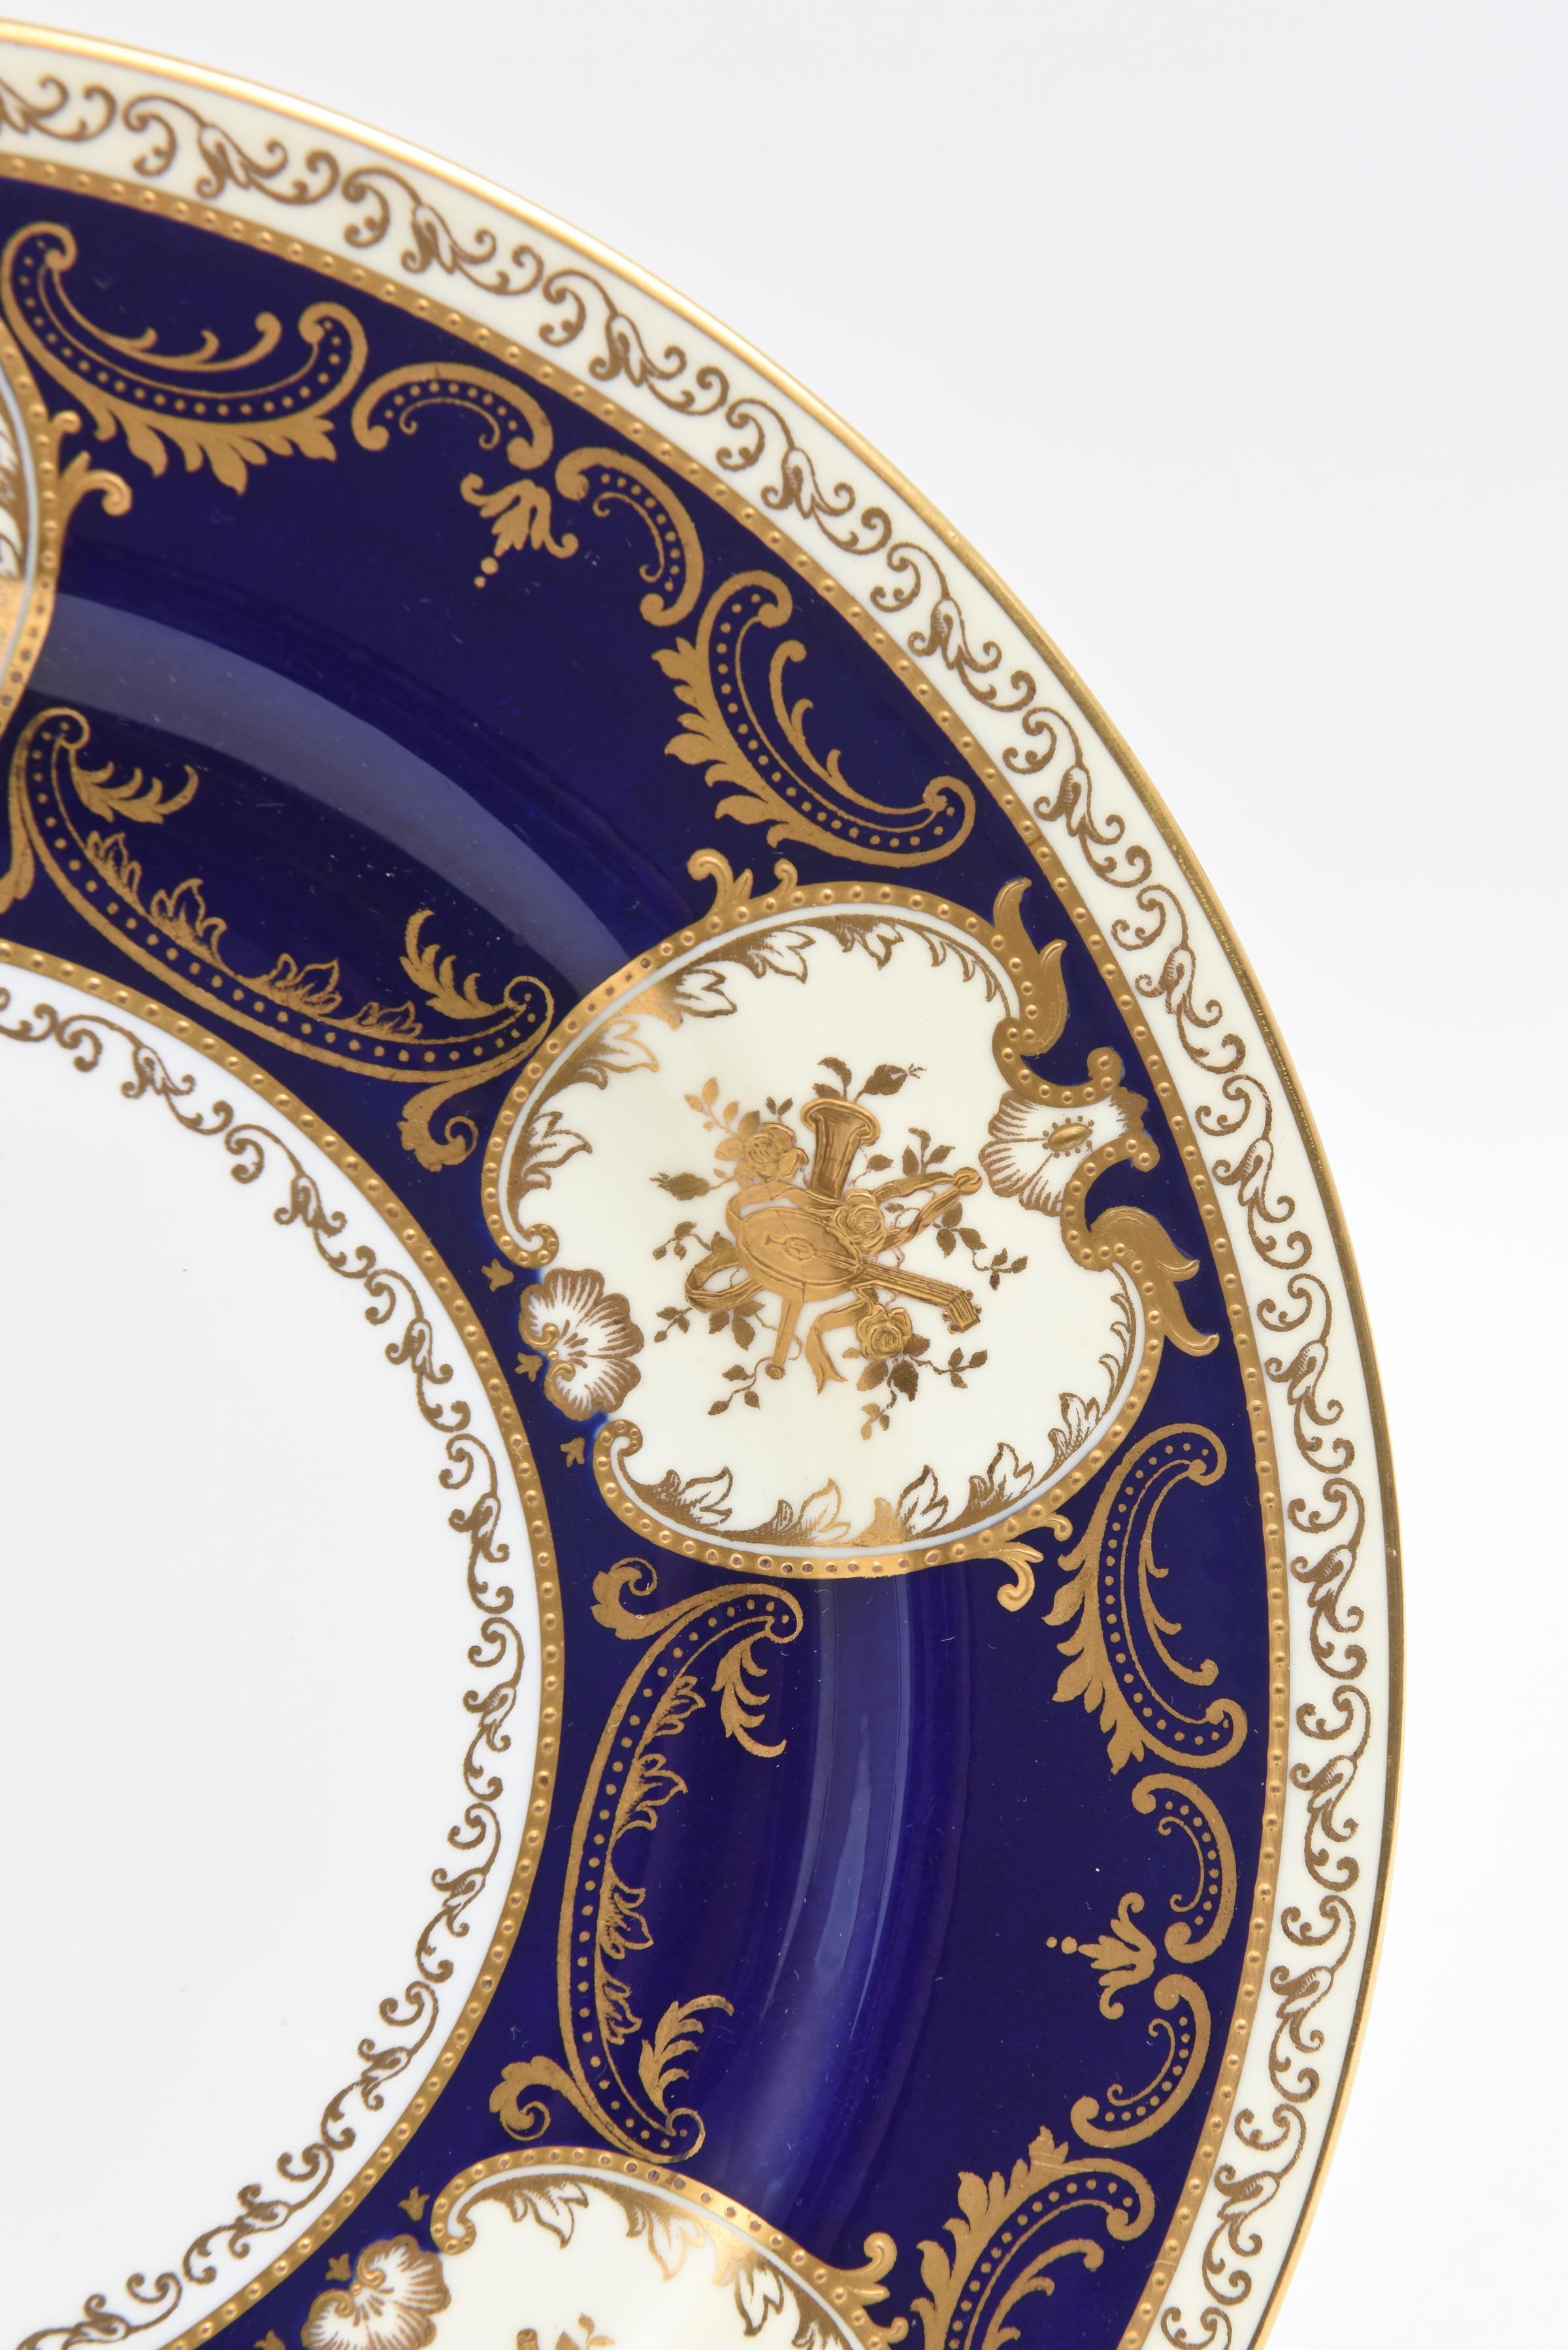 Eine seltene und wunderbare benutzerdefinierte Satz von 11 Platten von Copeland Spode England. Reiche kobaltblaue verlängerte Kragen mit erhabenen vergoldeten Kartuschen von Musikinstrumenten. Maßgeschneidert bestellt durch die Firma J. E. Caldwell